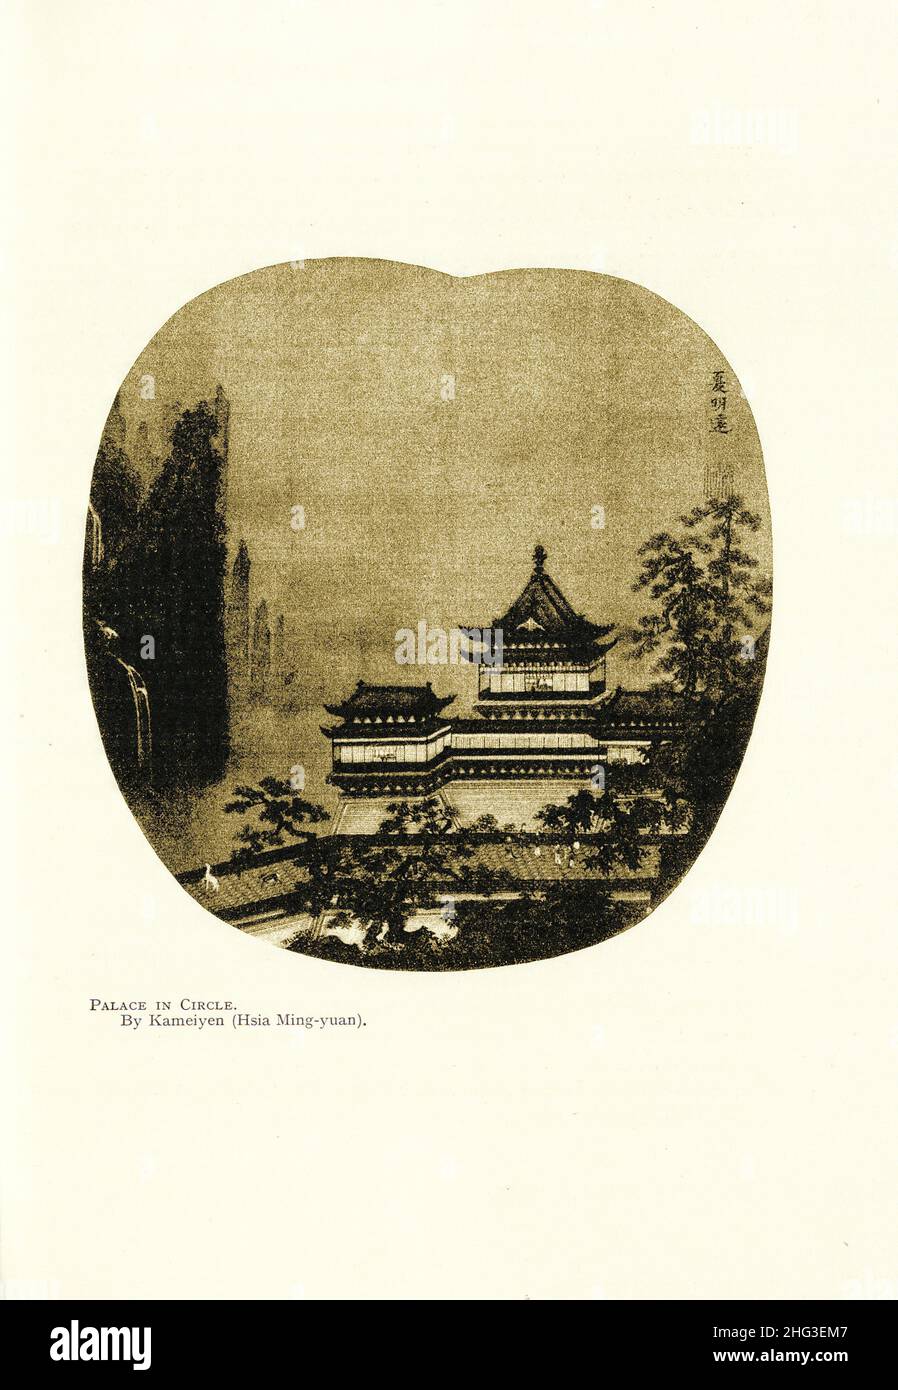 Pintura medieval china: Palacio en círculo. Por Kameiyen (Hsia Ming-yuan). Reproducción de la ilustración del libro de 1912 Foto de stock